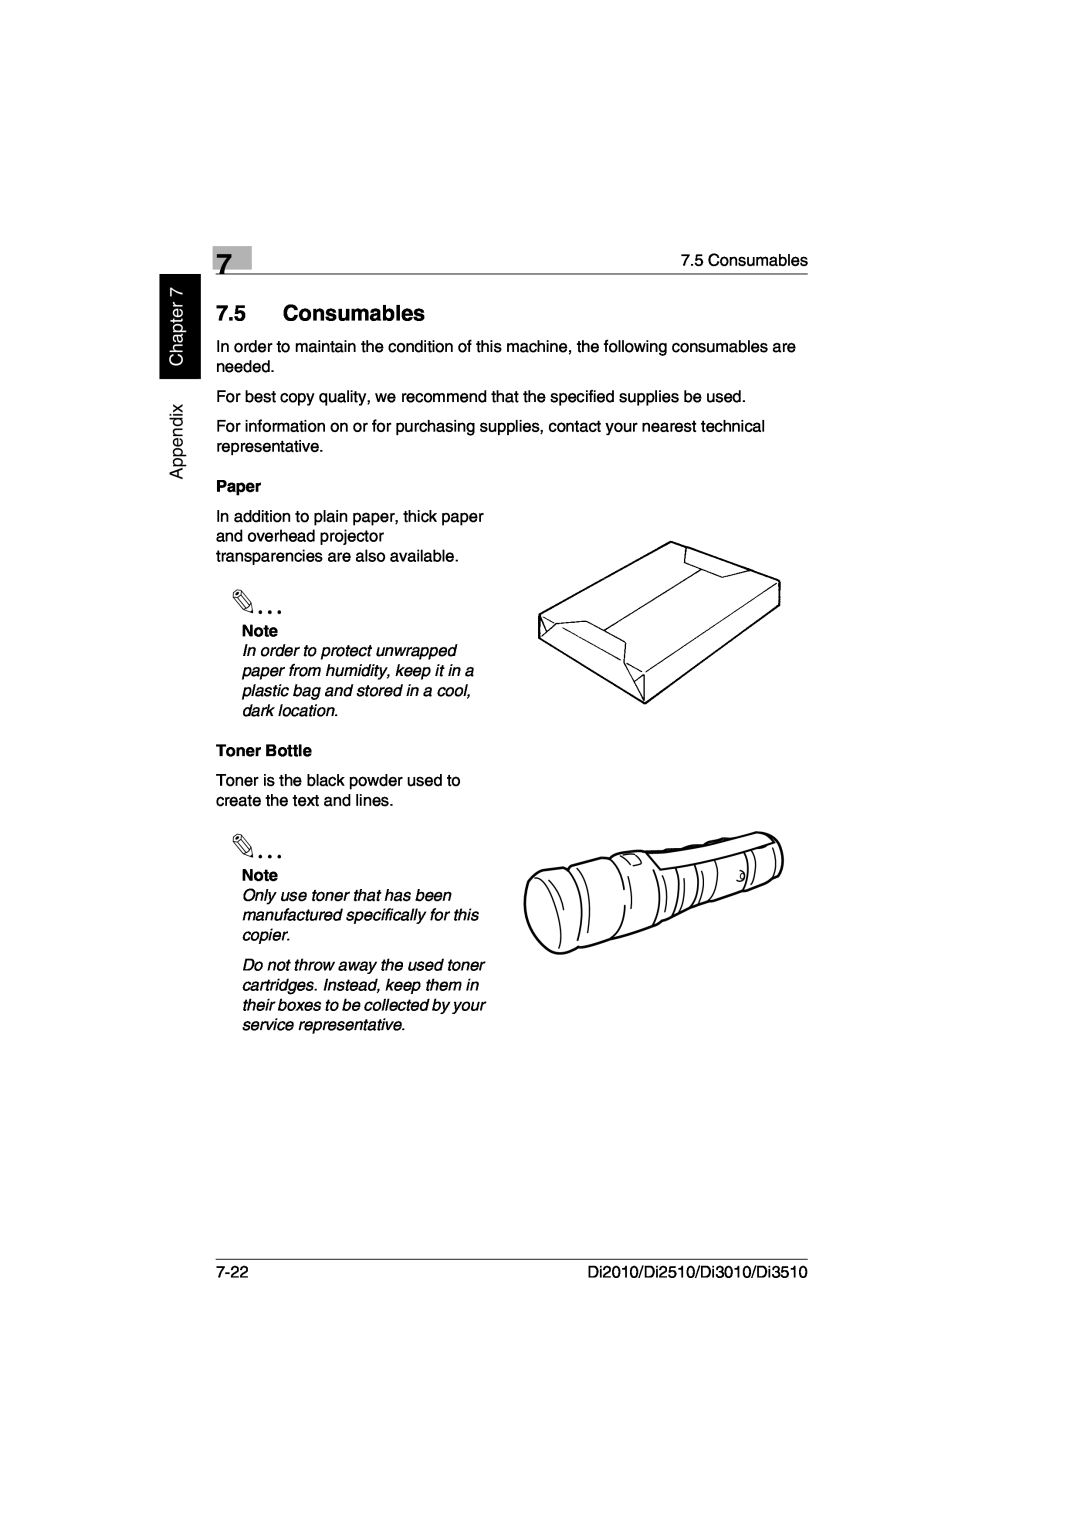 Minolta Di3510, DI2510, DI2010, DI3010 user manual Consumables, Appendix Chapter, Paper, Toner Bottle 